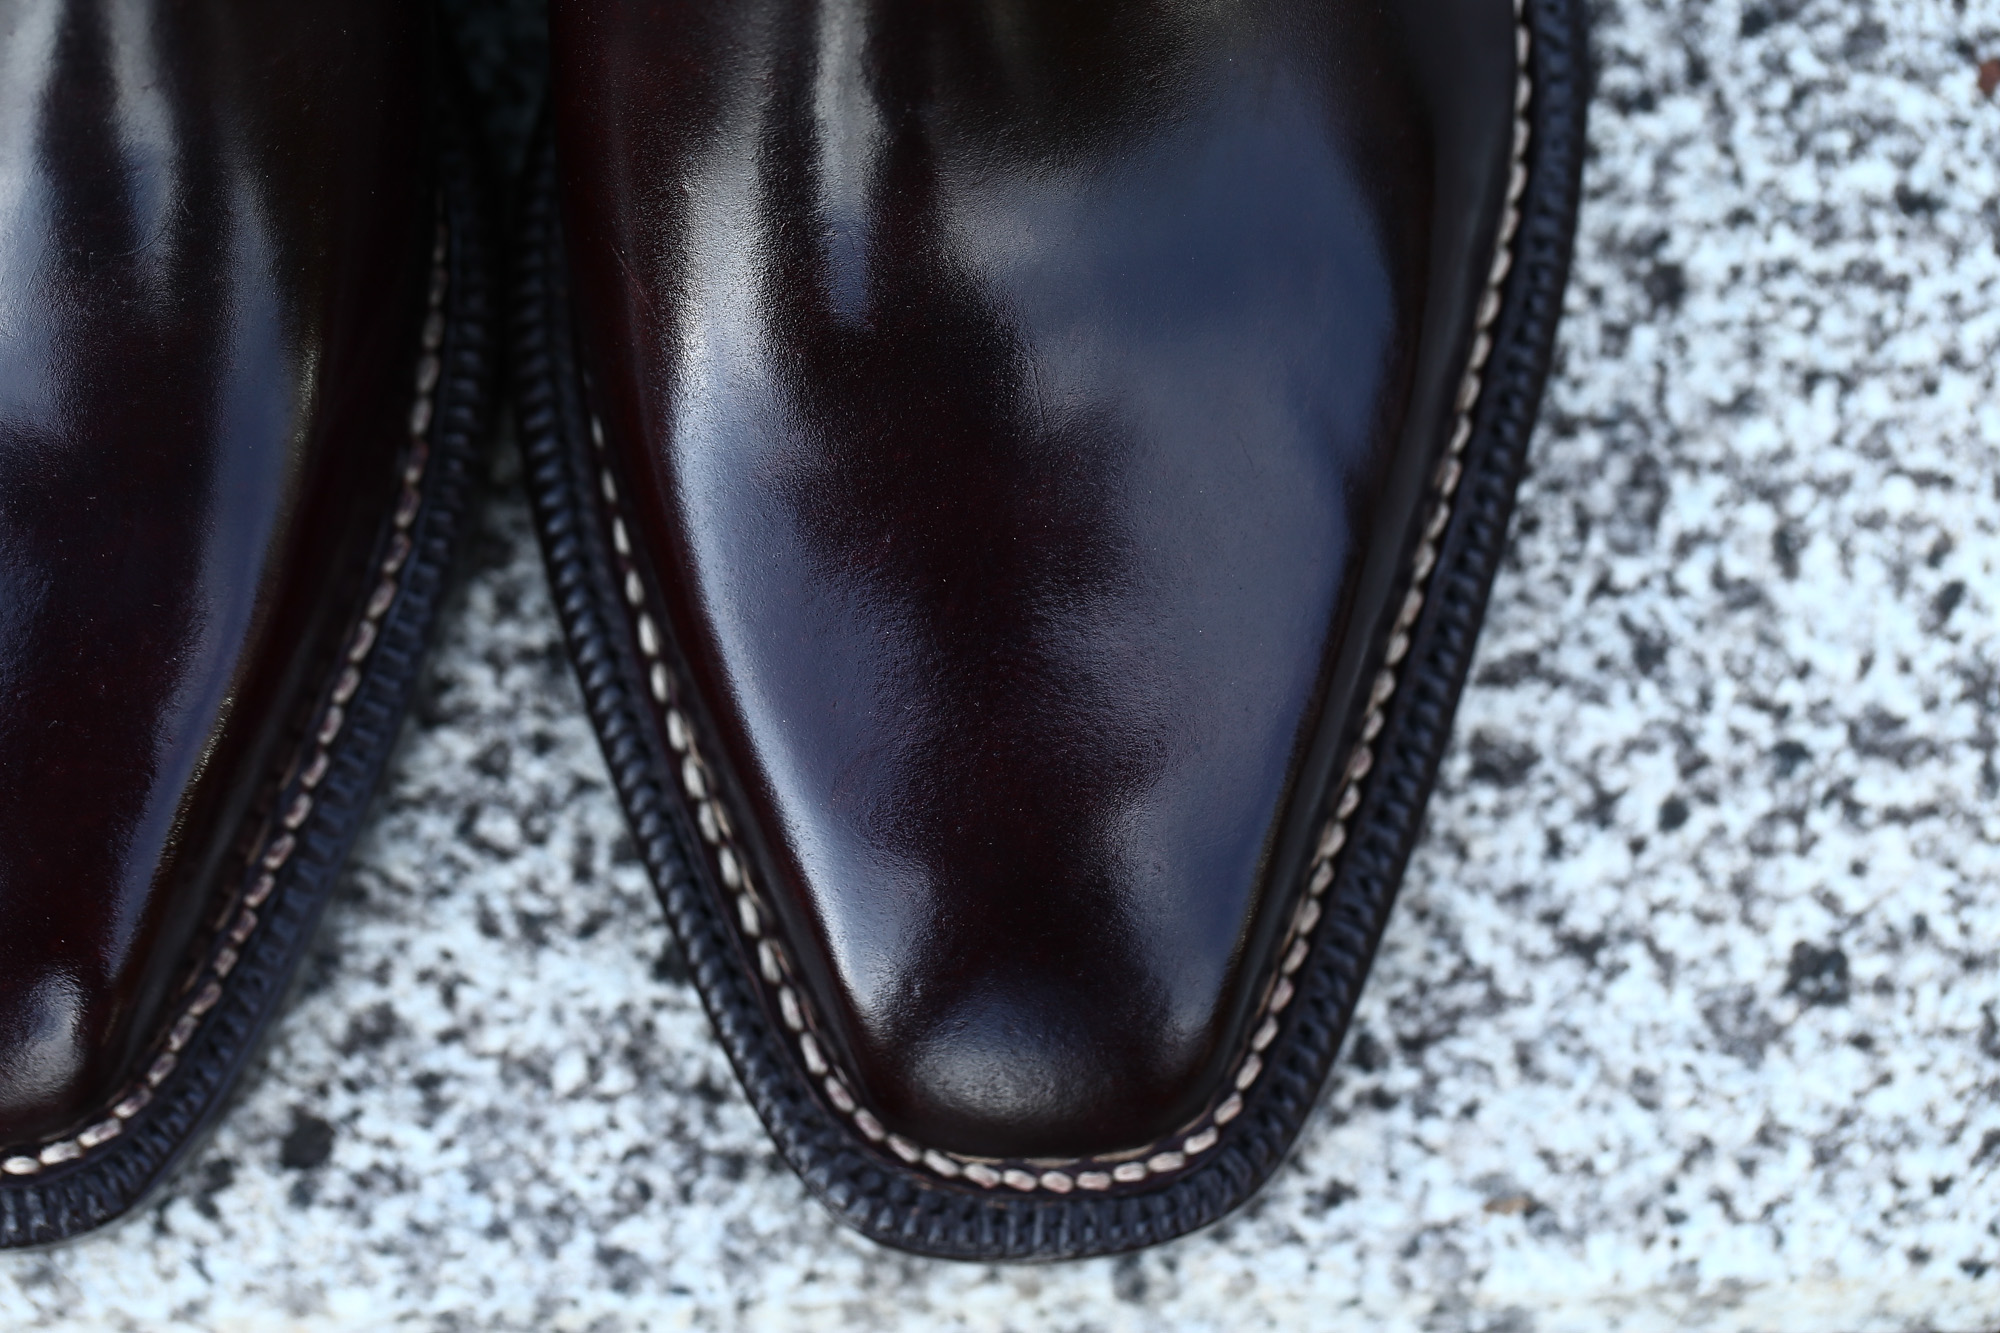 ENZO BONAFE (エンツォボナフェ) ART.3722 Chukka boots Horween Shell Cordovan Leather ホーウィン社 シェルコードバンレザー レザーブーツ コードバンブーツ チャッカブーツ No.8 (バーガンディー) made in Italy(イタリア製) 愛知 名古屋 Alto e Diritto アルト エ デリット ボナフェ コードバン ベネチアンクリーム JOHN LOBB ジョンロブ CHURCH’S チャーチ JOSEPH CHEANEY ジョセフチーニー CORTHAY コルテ ALFRED SARGENT アルフレッドサージェント CROCKETT&JONES クロケットジョーンズ F.LLI GIACOMETTI フラテッリジャコメッティ ENZO BONAFE エンツォボナフェ BETTANIN&VENTURI ベッタニンヴェントゥーリ JALAN SRIWIJAYA ジャランスリウァヤ J.W.WESTON ジェイエムウエストン SANTONI サントーニ SERGIO ROSSI セルジオロッシ CARMINA カルミナ